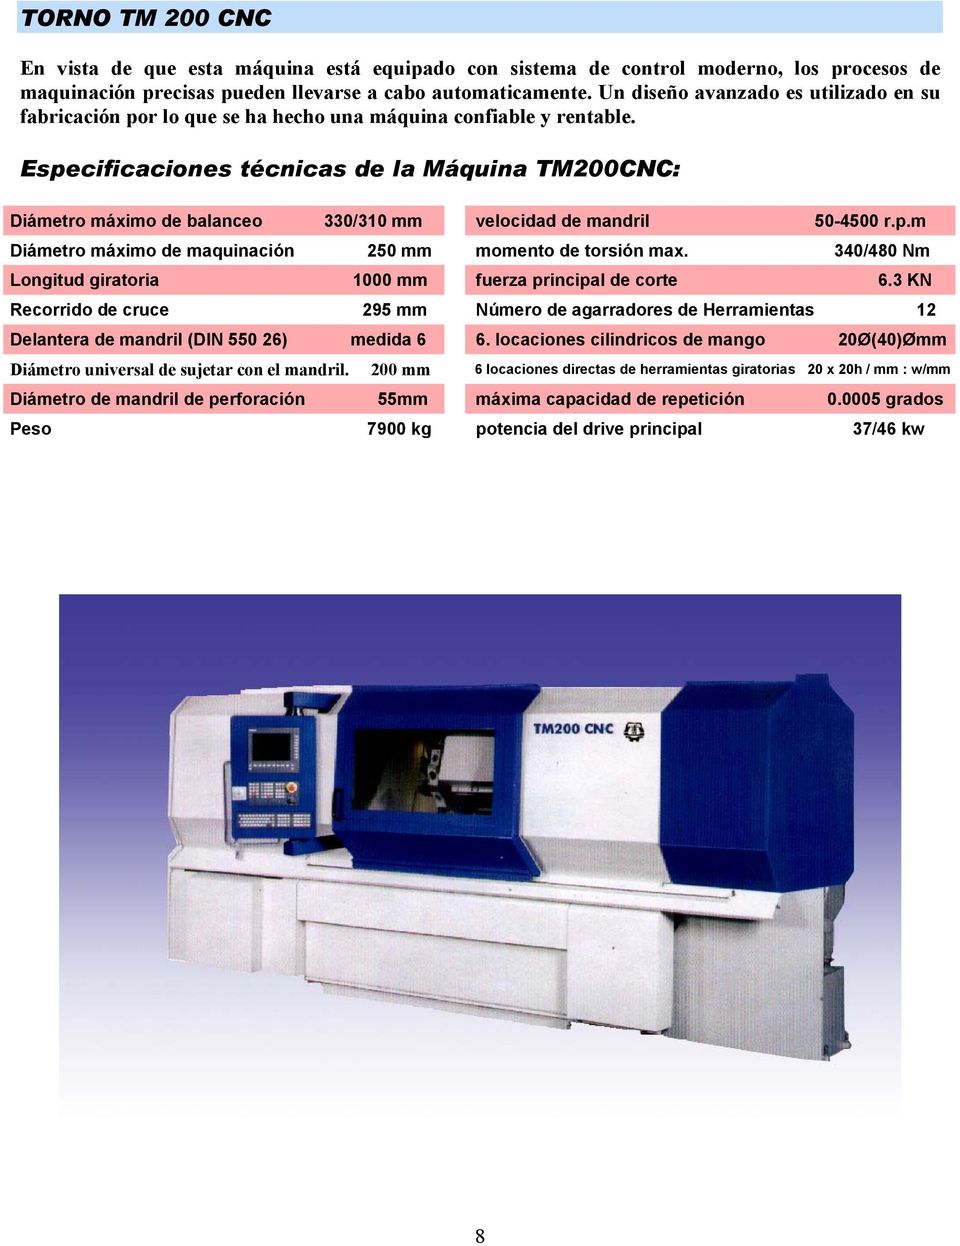 Especificaciones técnicas de la Máquina TM200CNC: Diámetro máximo de balanceo 330/310 mm velocidad de mandril 50-4500 r.p.m Diámetro máximo de maquinación 250 mm momento de torsión max.